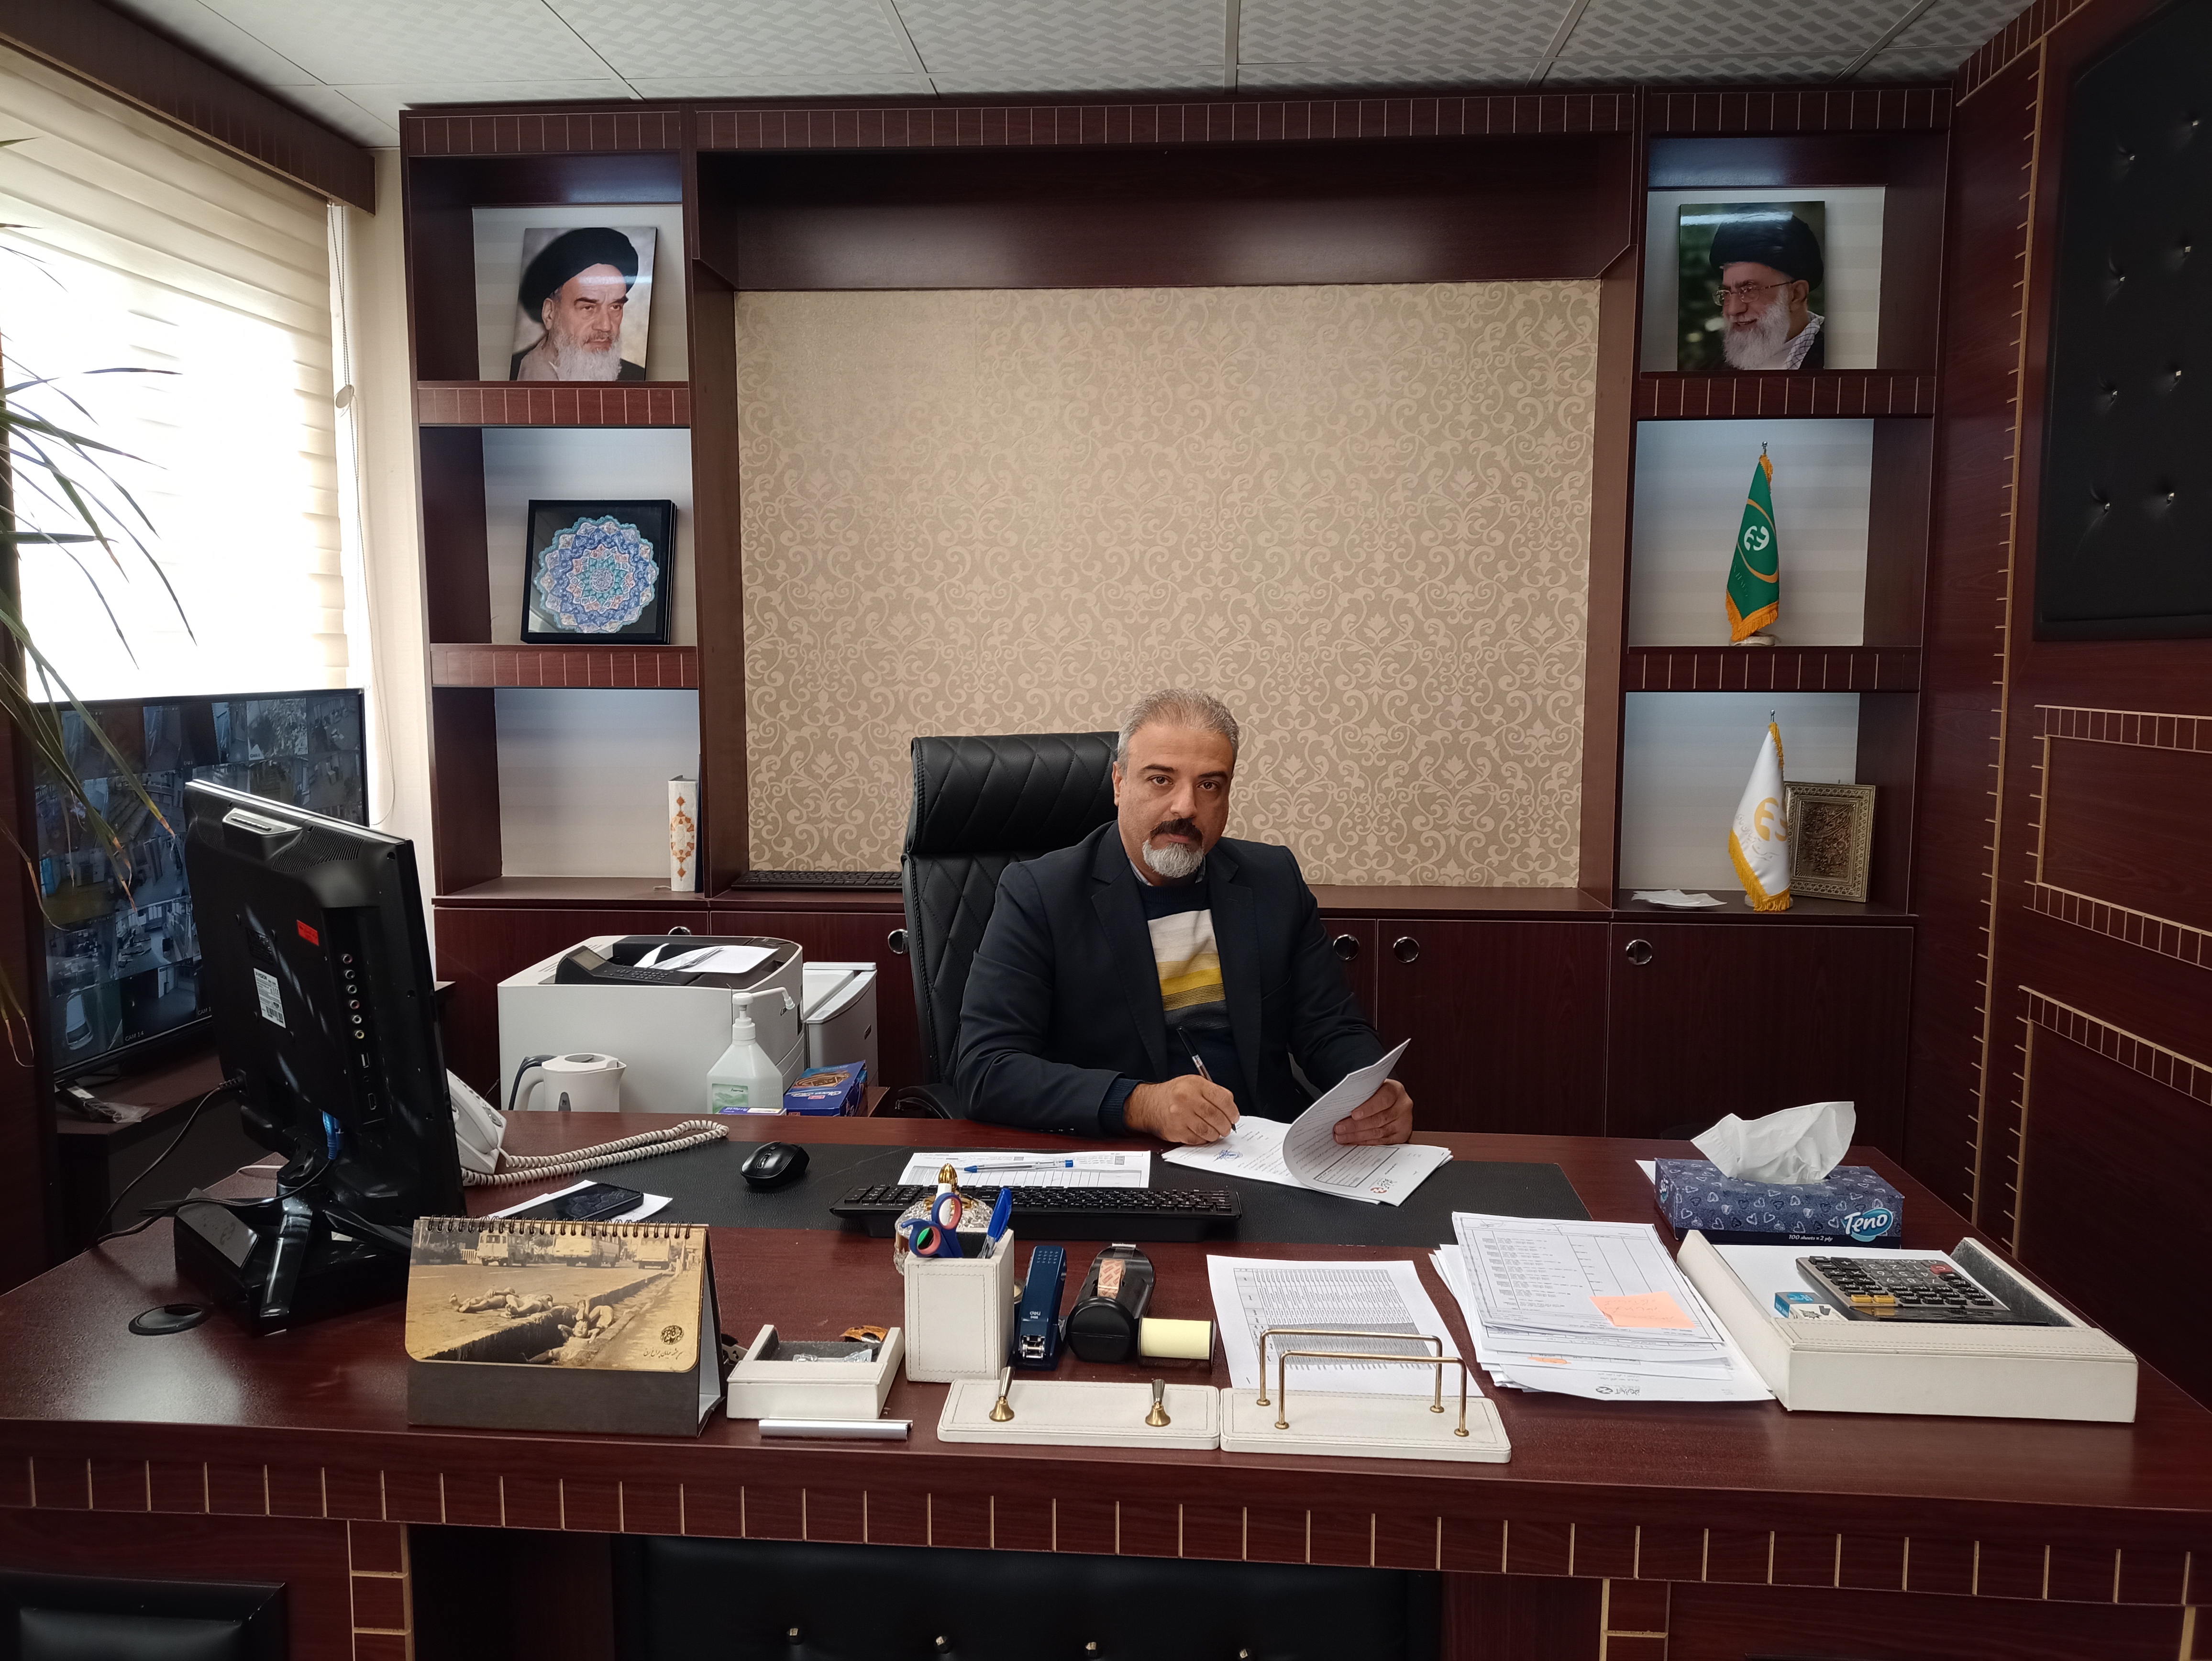 مدیرشعبه نجات الهی آتیه سازان حافظ خبر داد:
انعقاد قرارداد بیمه درمان اکمل کانون بازنشستگان آموزش و پرورش شهر تهران 
